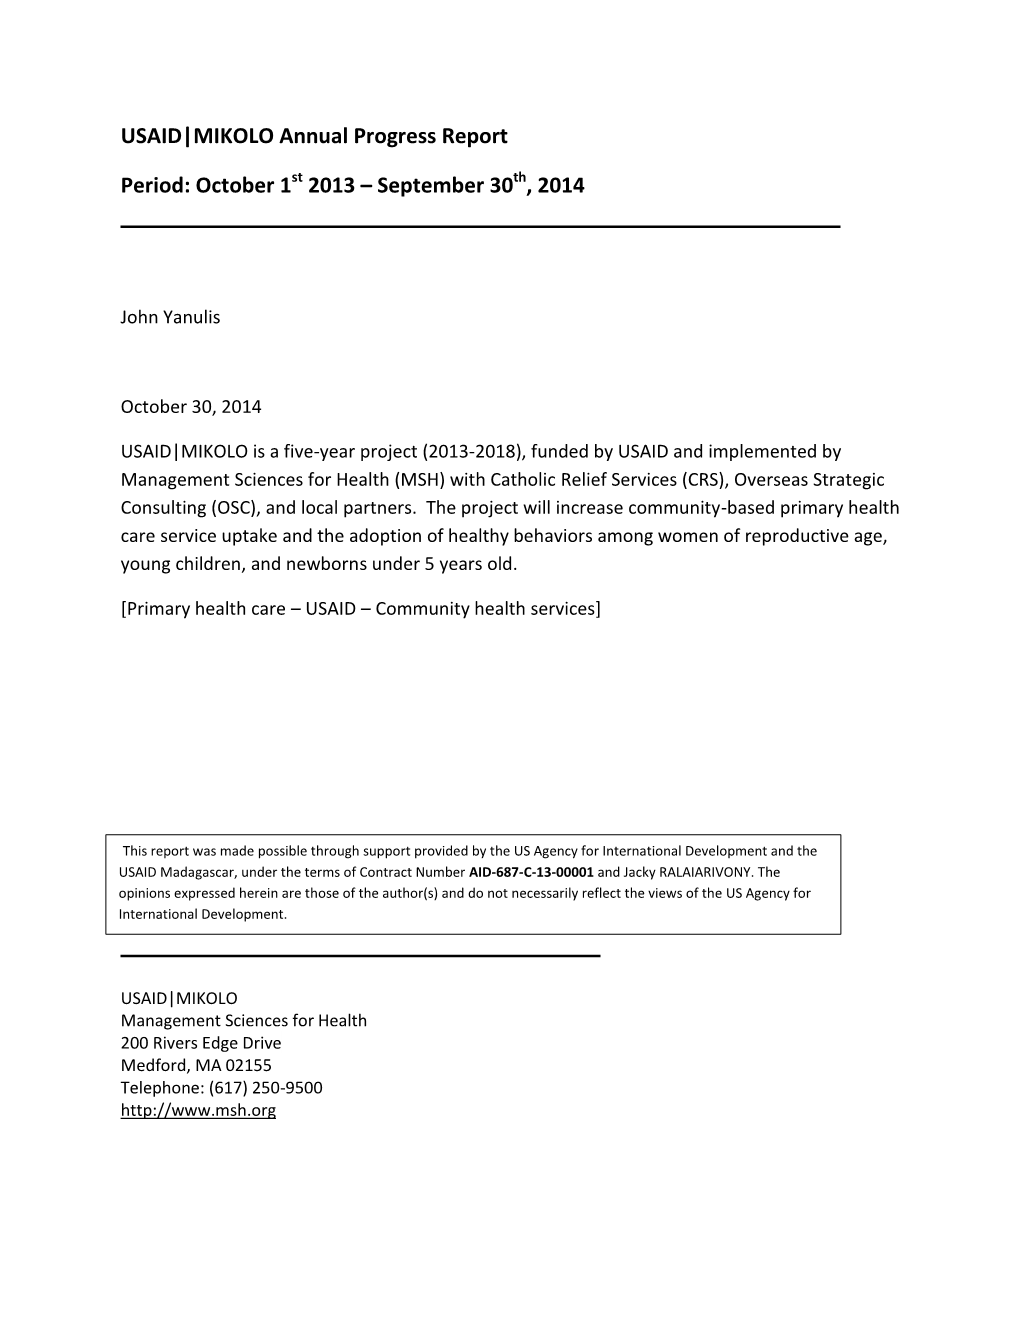 USAID|MIKOLO Annual Progress Report Period: October 1 2013